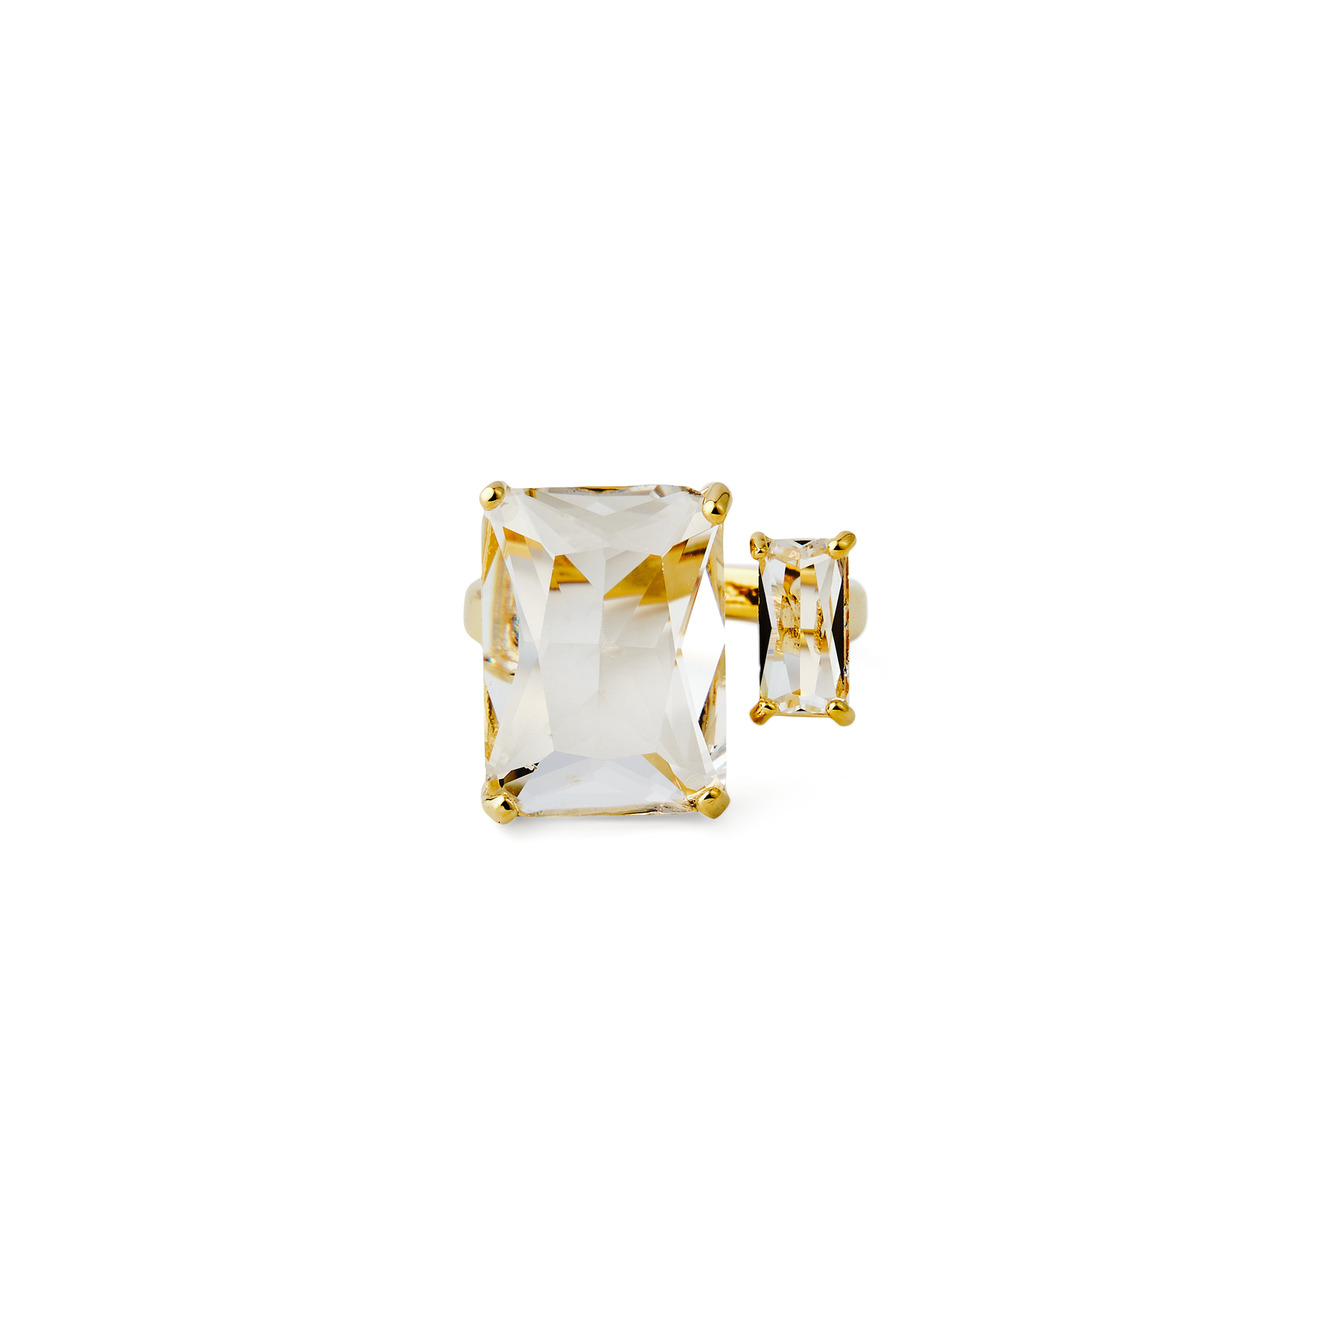 Herald Percy Золотистое кольцо с двумя разными кристаллами herald percy кольцо с золотистыми кристаллами